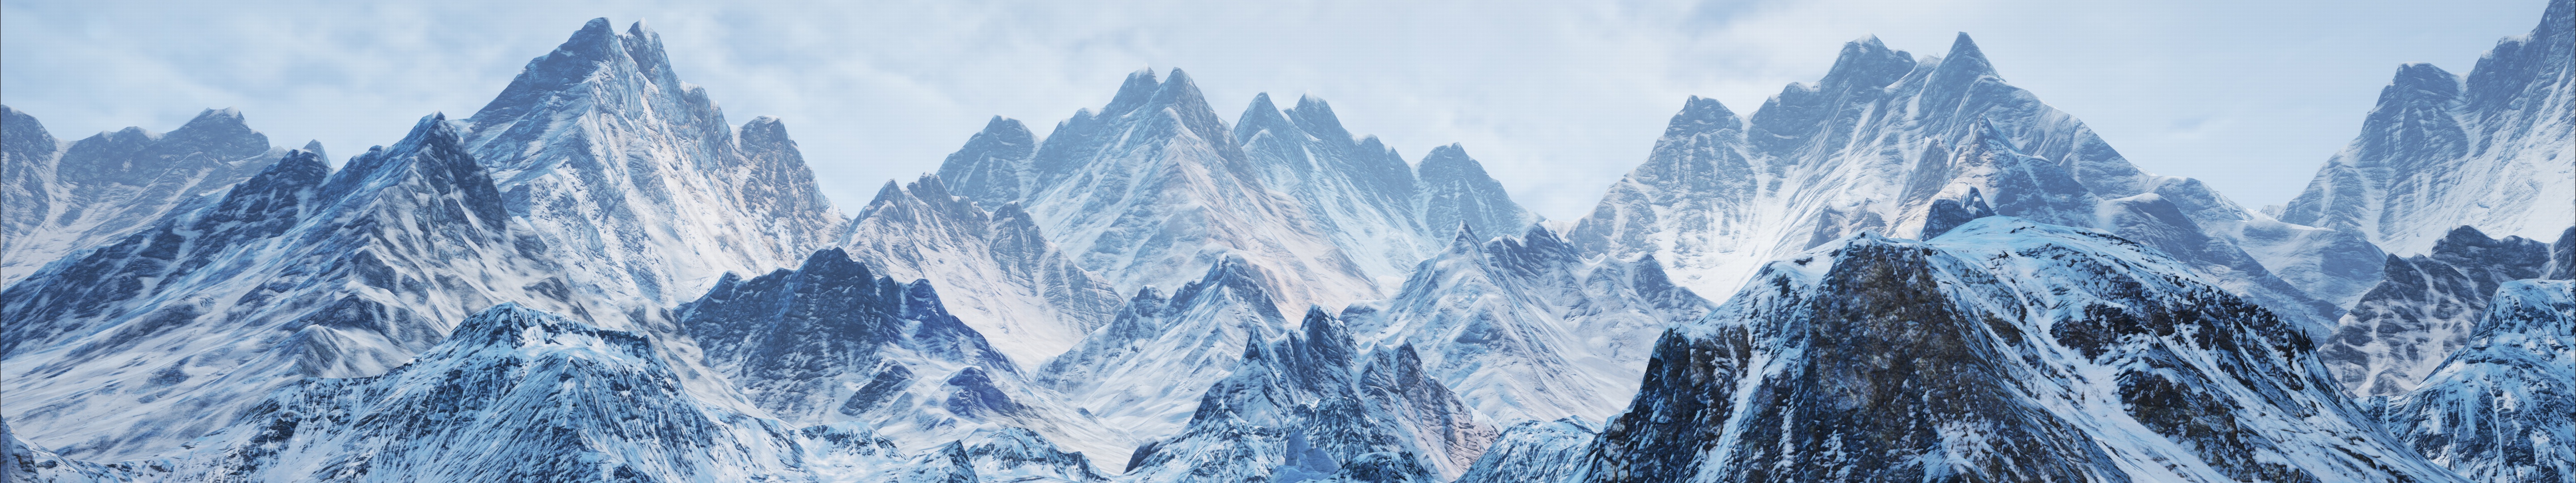 Hình nền núi: Thưởng thức vẻ đẹp tuyệt mỹ của núi non hùng vĩ, thả hồn vào khung cảnh thiên nhiên ấn tượng. Bộ sưu tập hình nền núi với chất lượng 5760x1080 đặc biệt được lựa chọn kỹ lưỡng, sẽ làm bừng sáng bầu không khí và đem lại sự độc đáo cho máy tính của bạn.